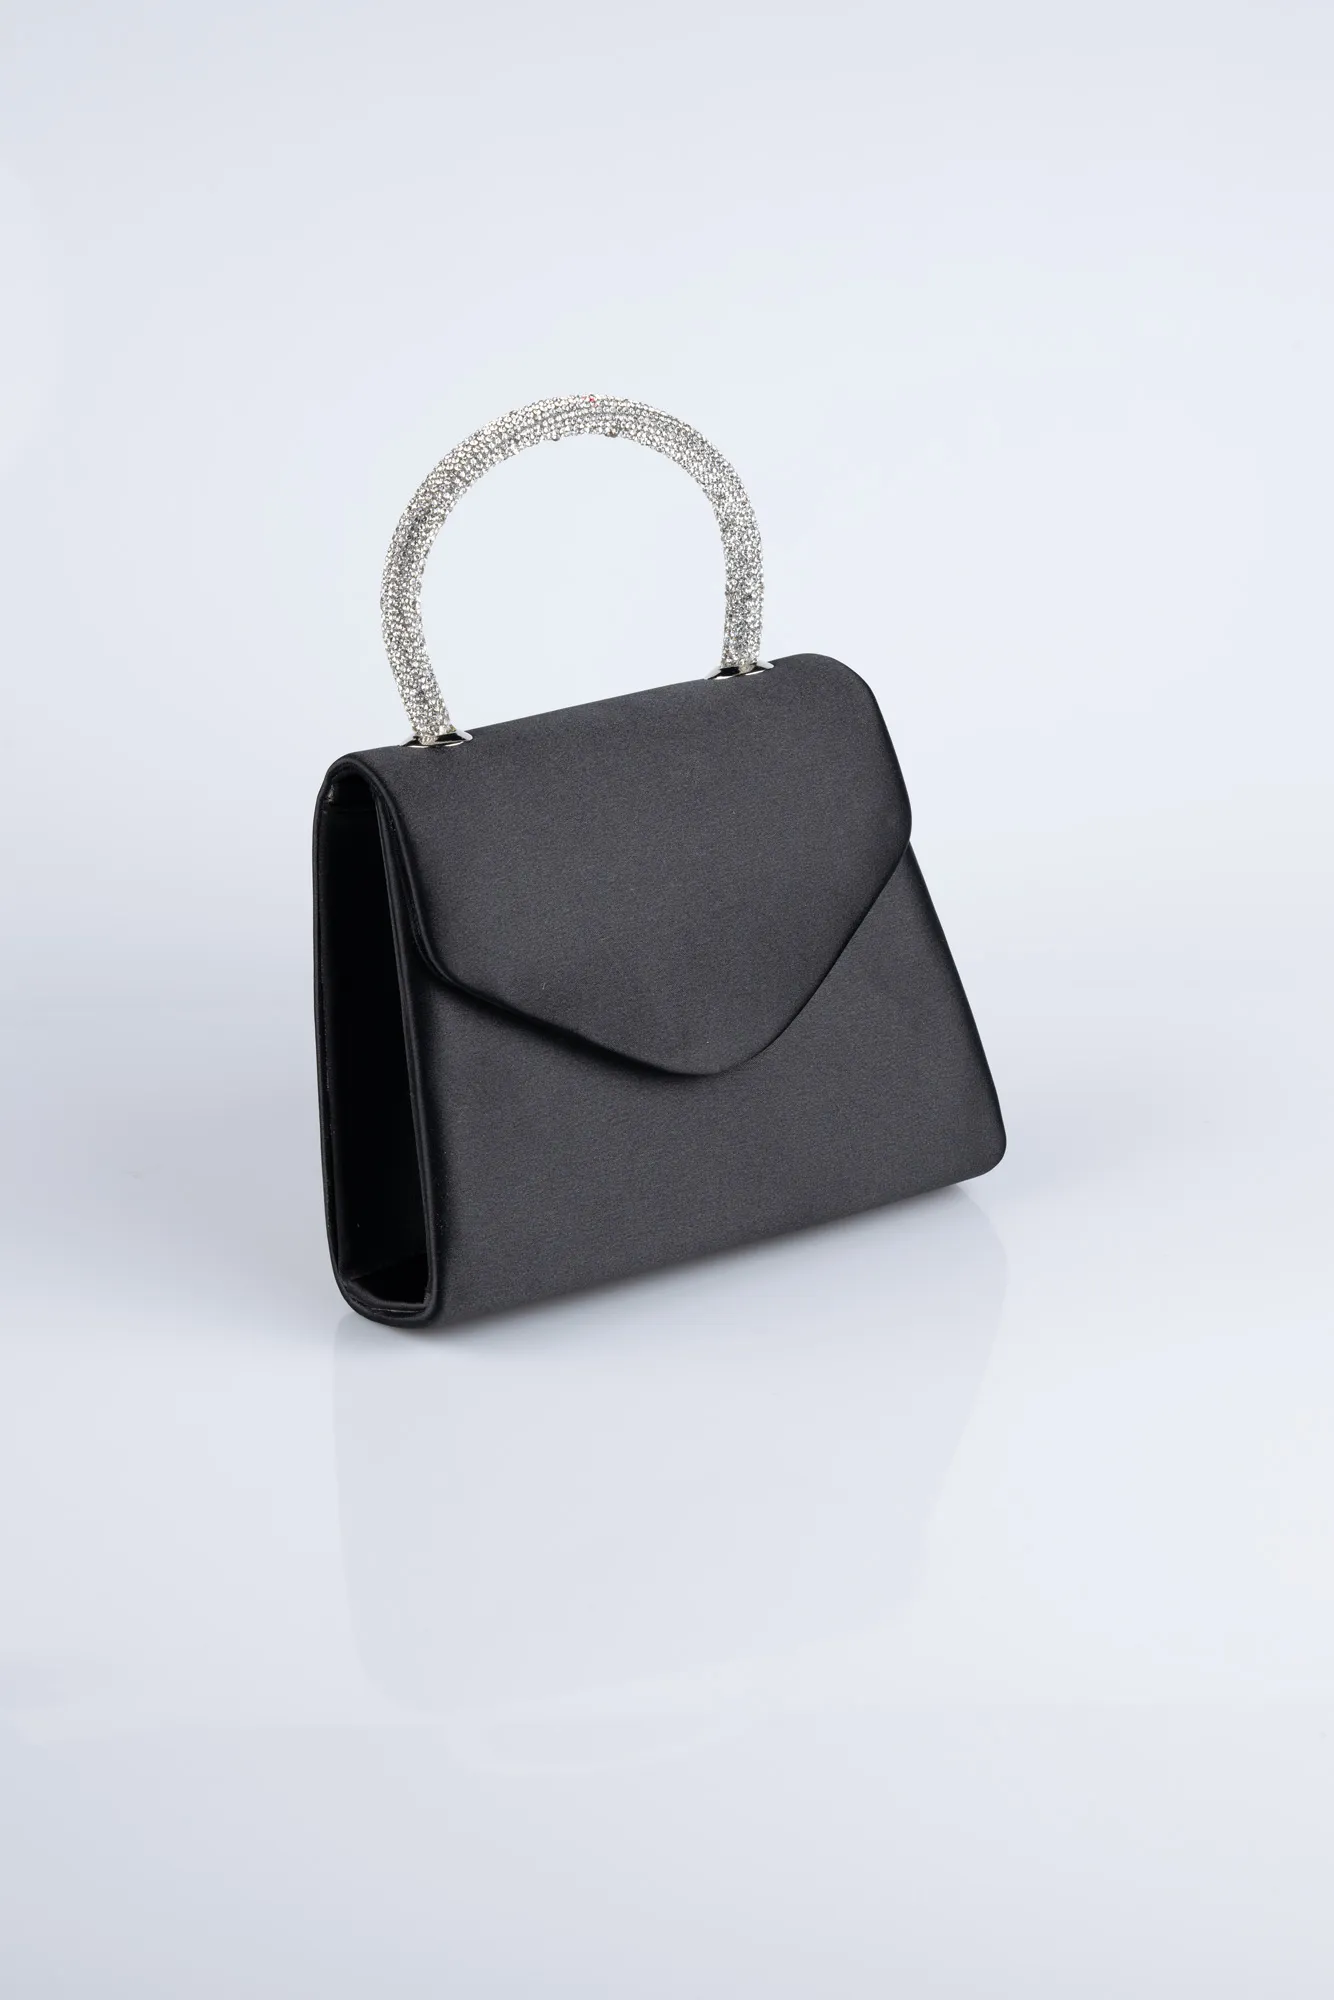 Black-Satin Box Bag V436